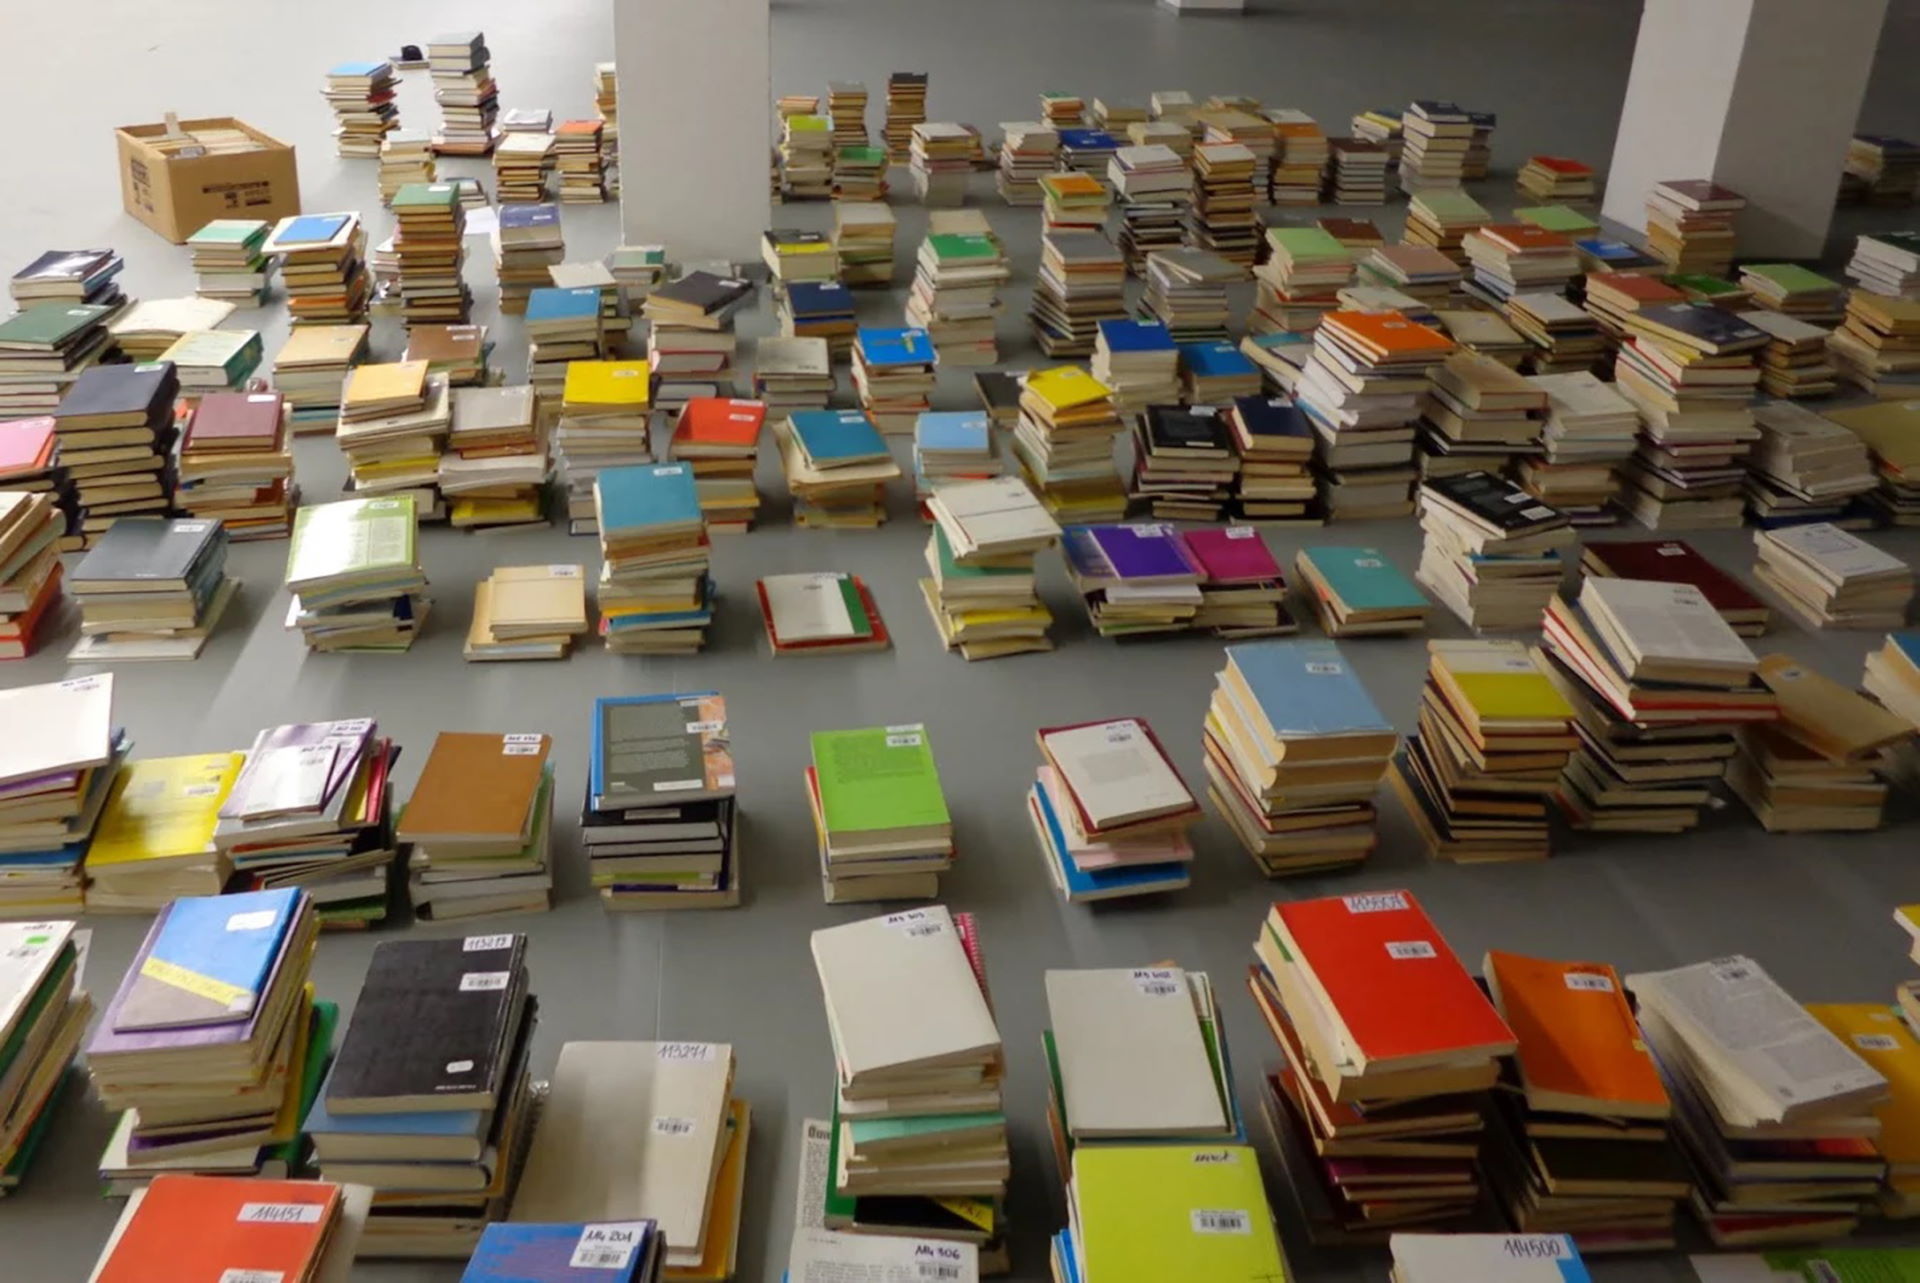 Szara podłoga na której leżą książki poukładane w stosy po kilka lub kilkanaście sztuk.